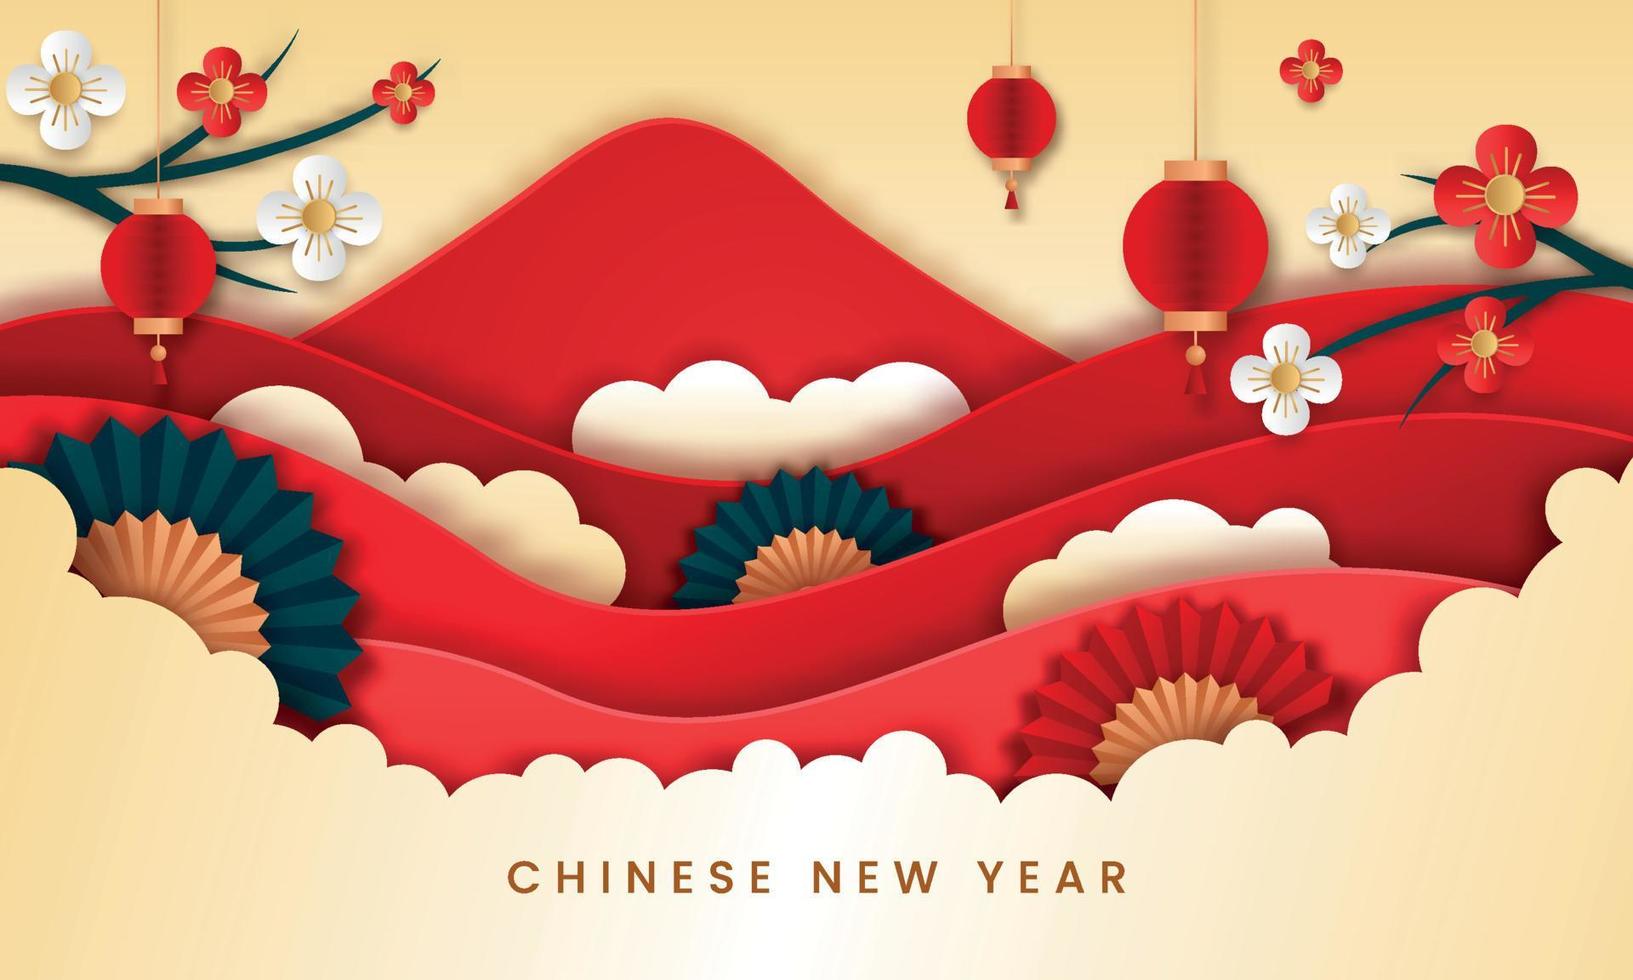 vetor de estilo de papel de ano novo chinês. cartaz ou banner usando lanternas e flores adequadas para o evento do ano novo chinês.